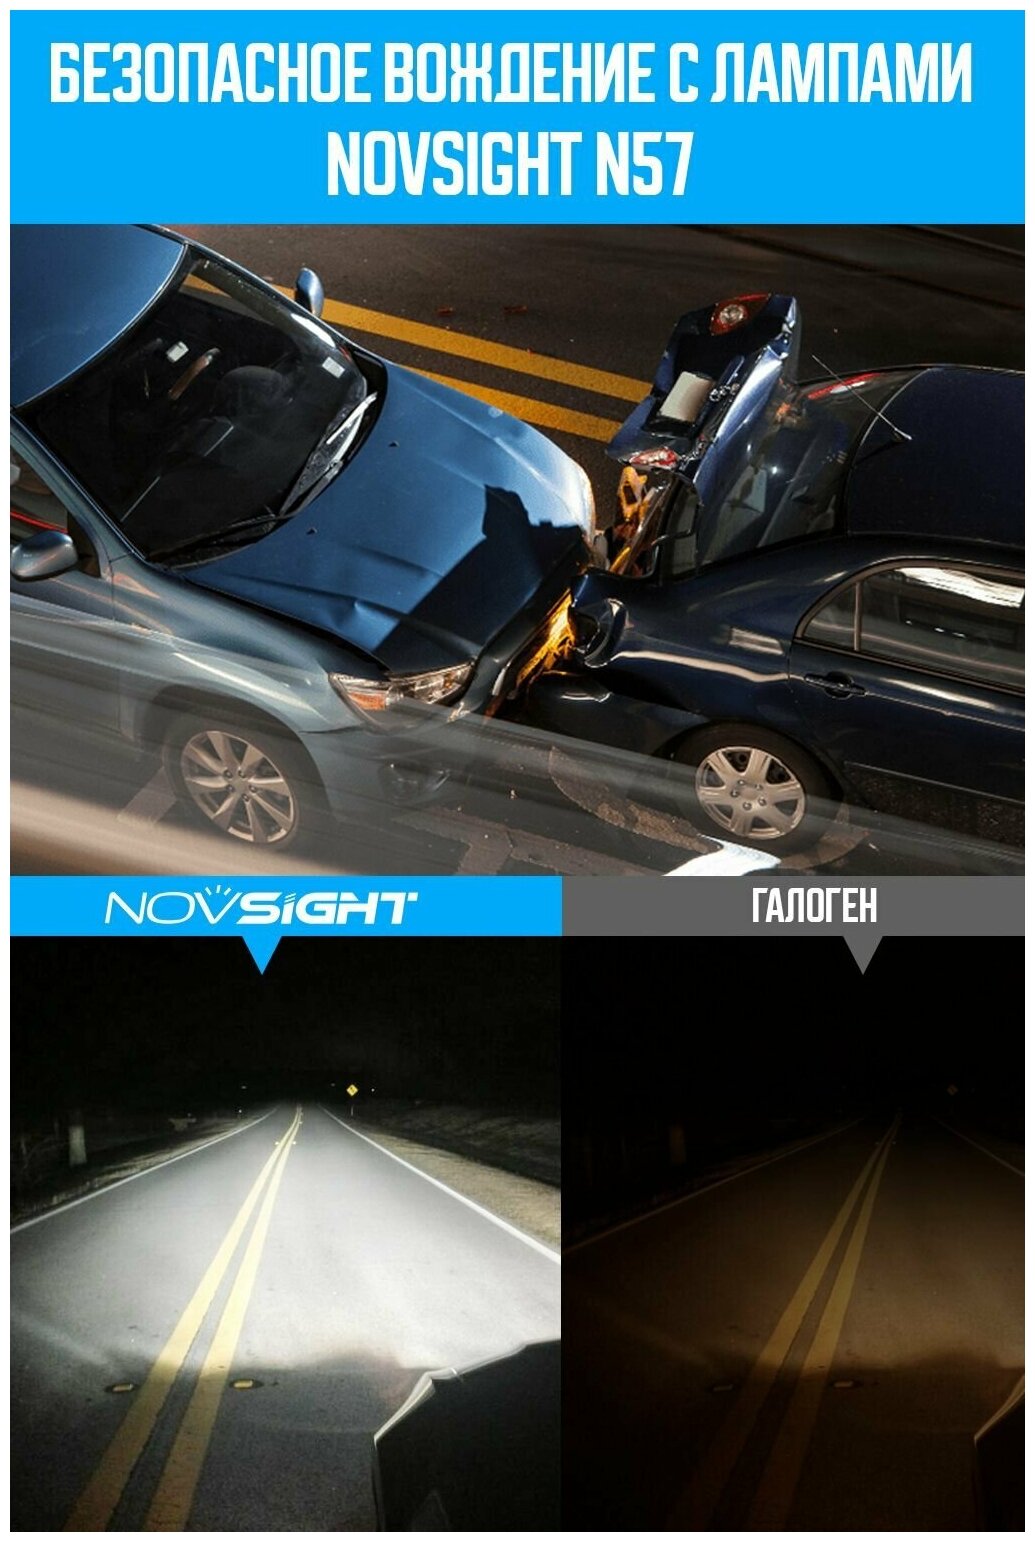 Светодиодная лампа Novsight N57 H1 цоколь P14,5s 40Вт 2шт мини размер 6500К 10000Лм белый свет LED автомобильная